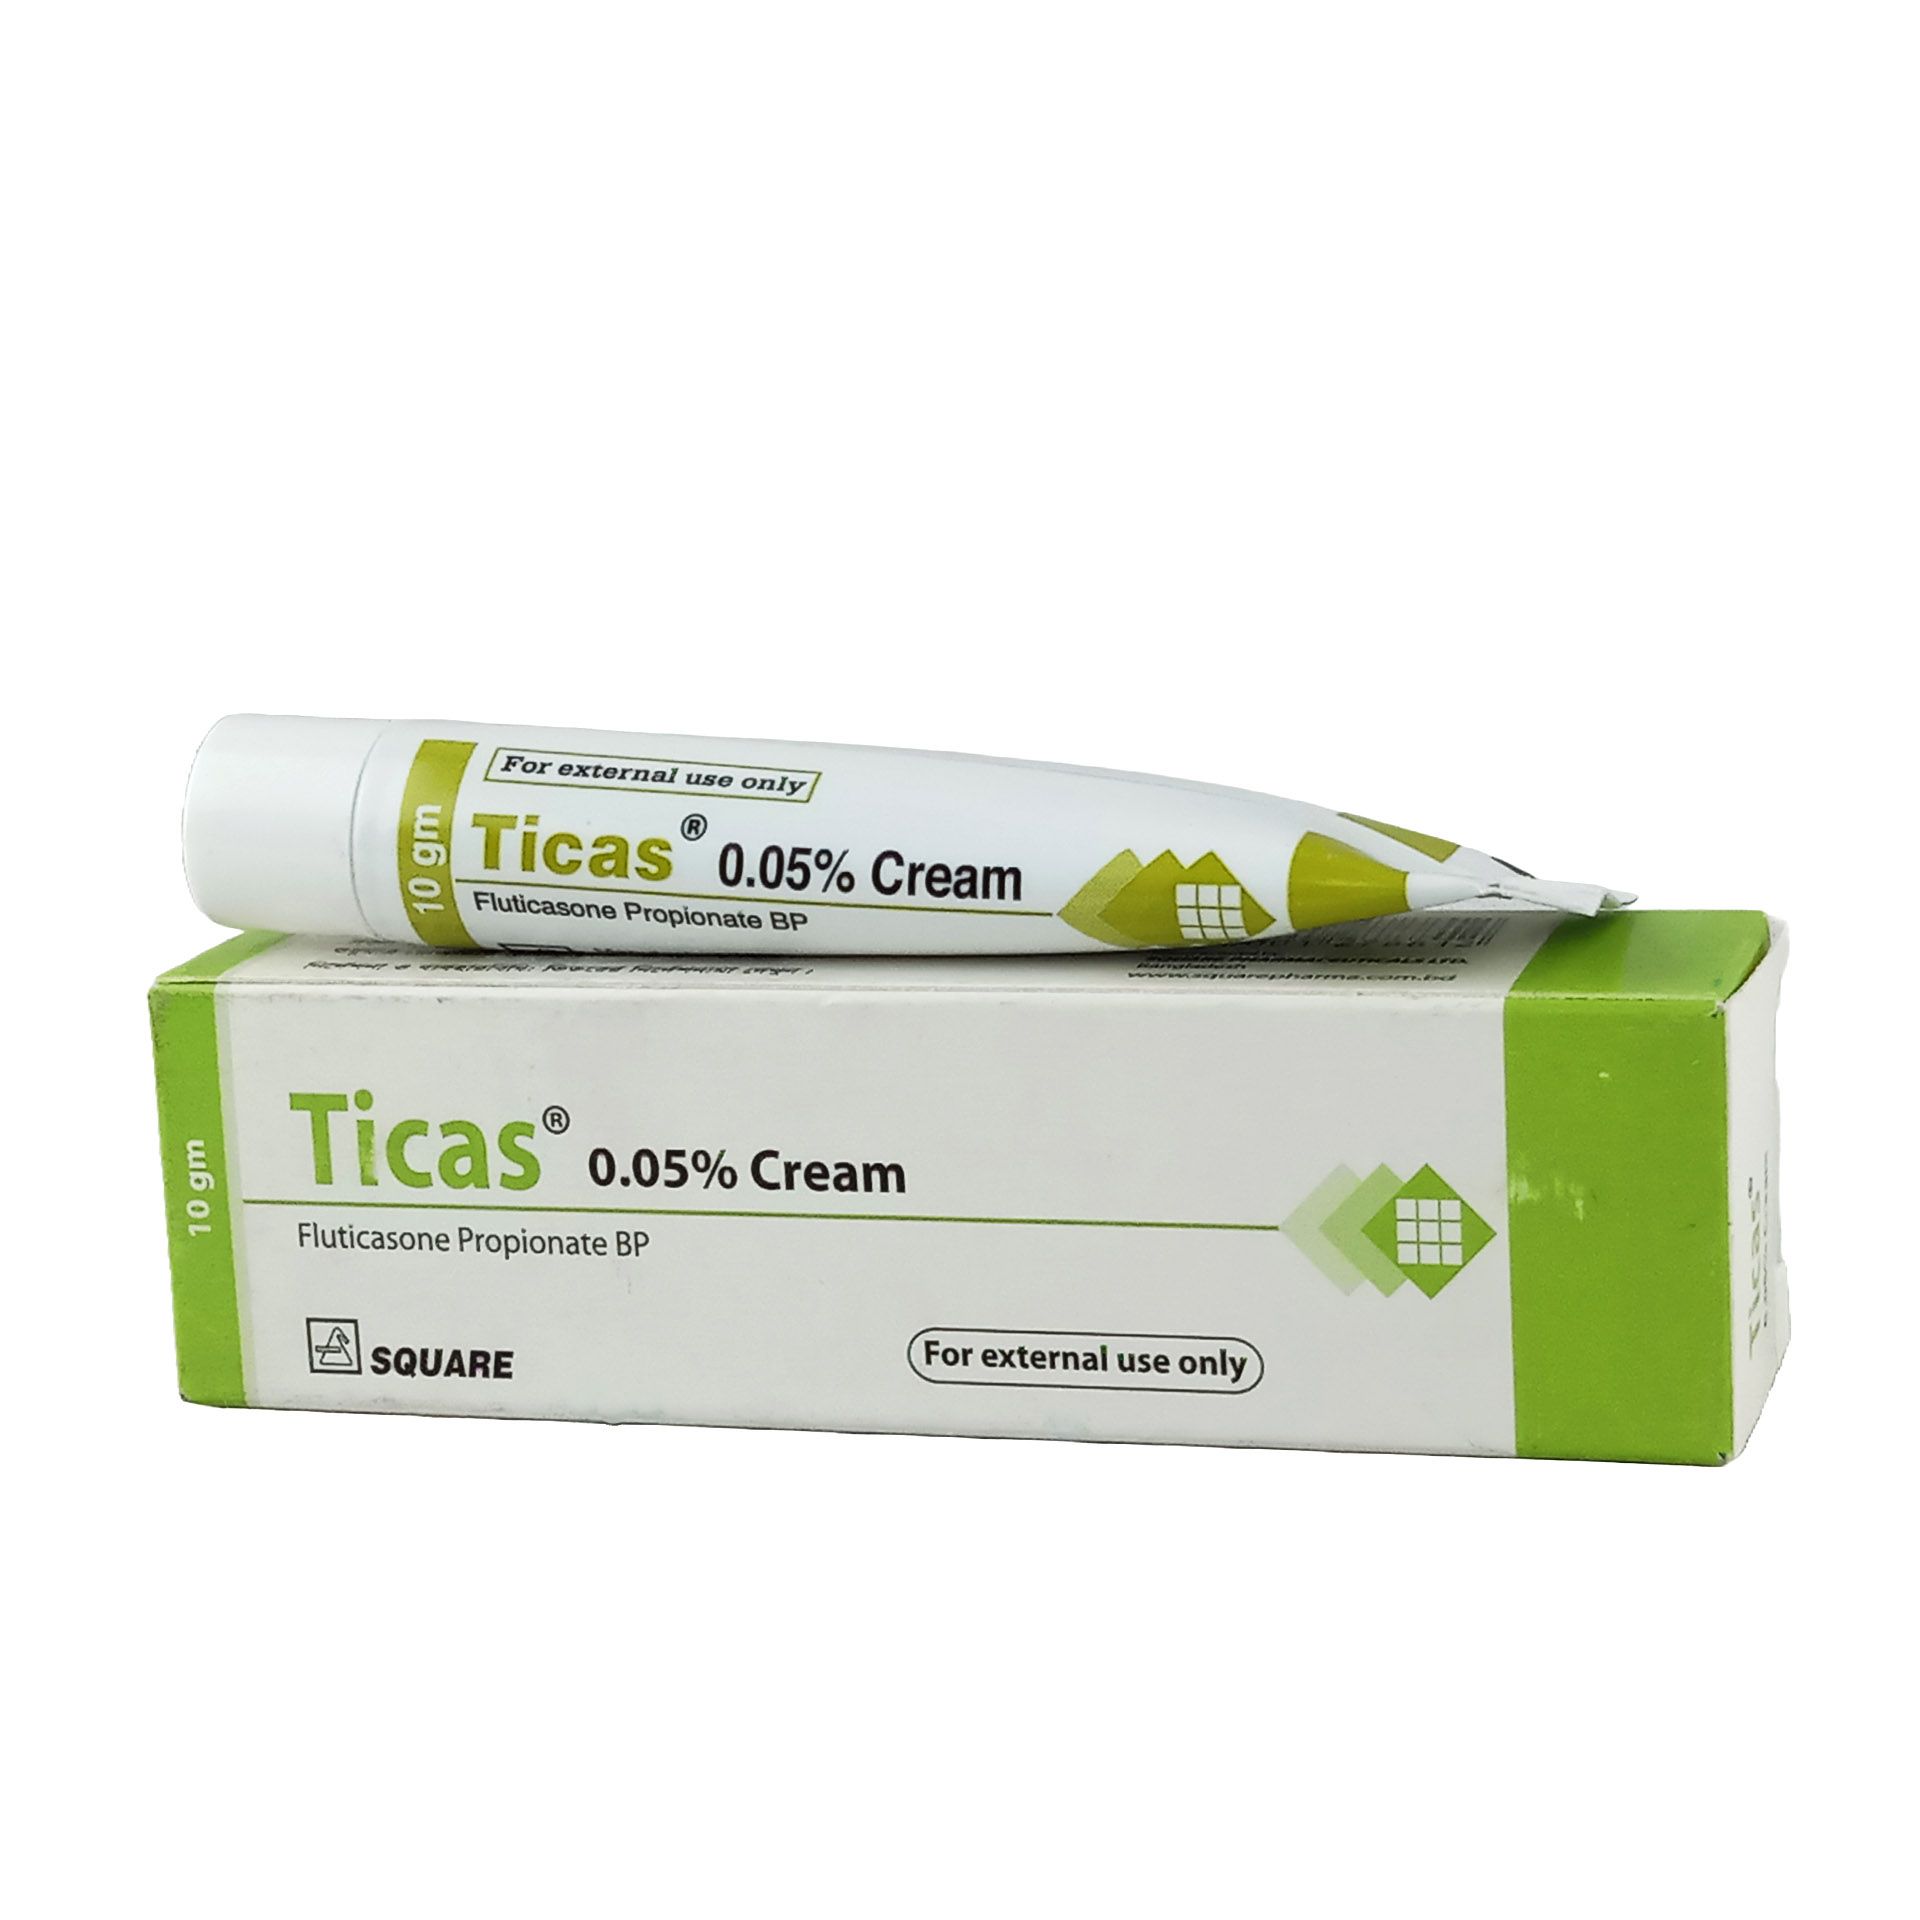 Ticas Cream 0.05% Cream